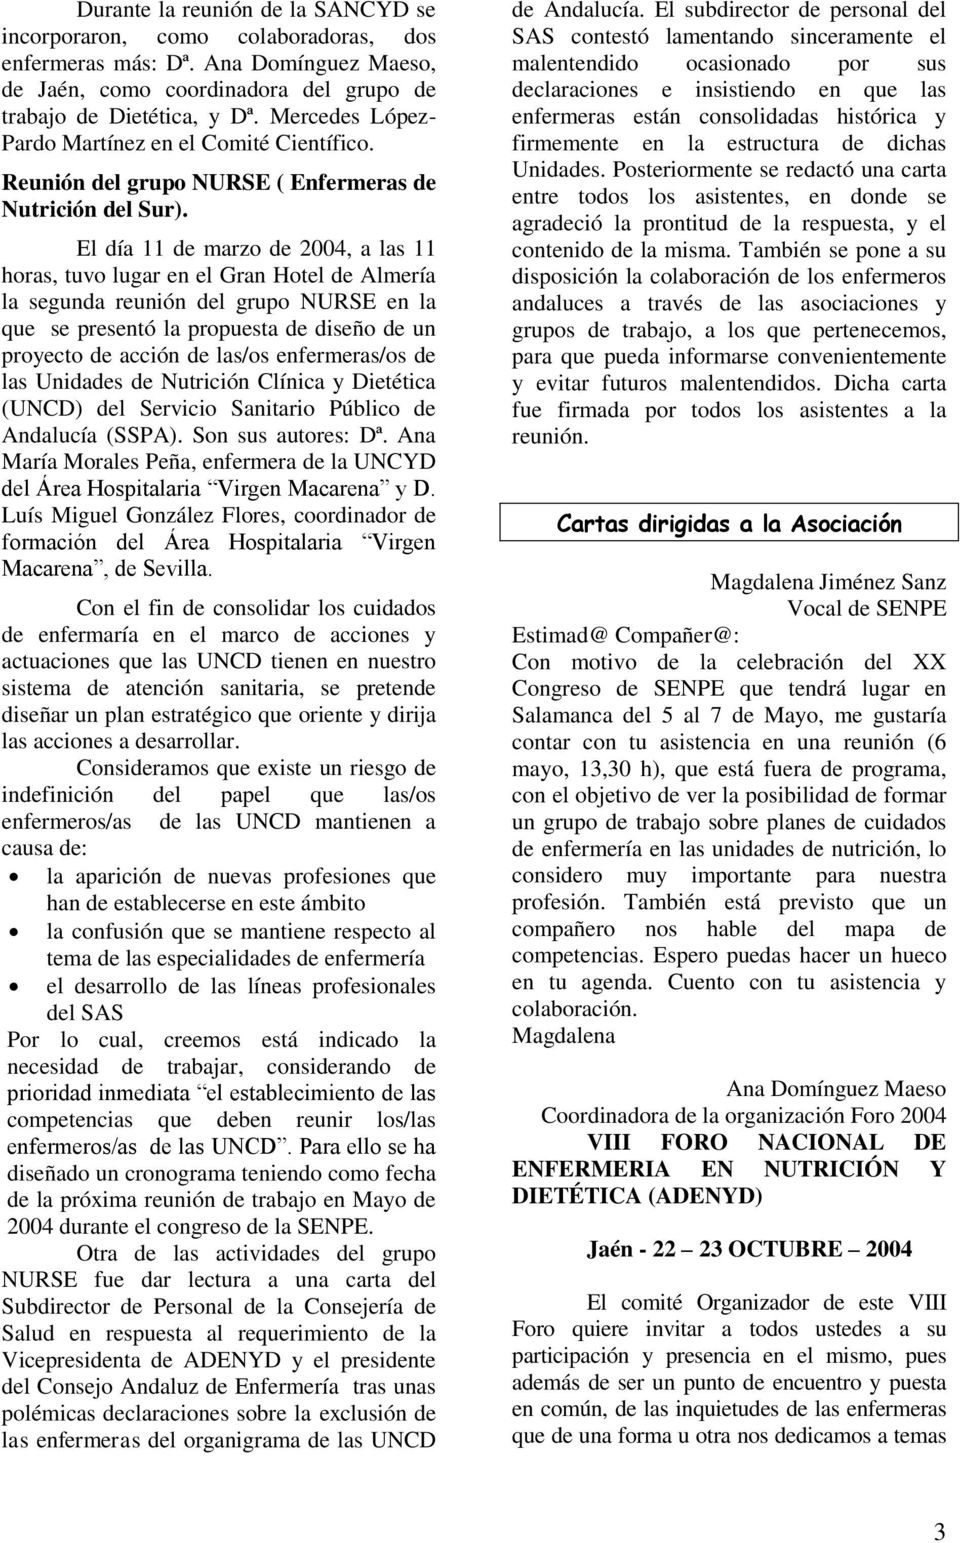 El día 11 de marzo de 2004, a las 11 horas, tuvo lugar en el Gran Hotel de Almería la segunda reunión del grupo NURSE en la que se presentó la propuesta de diseño de un proyecto de acción de las/os